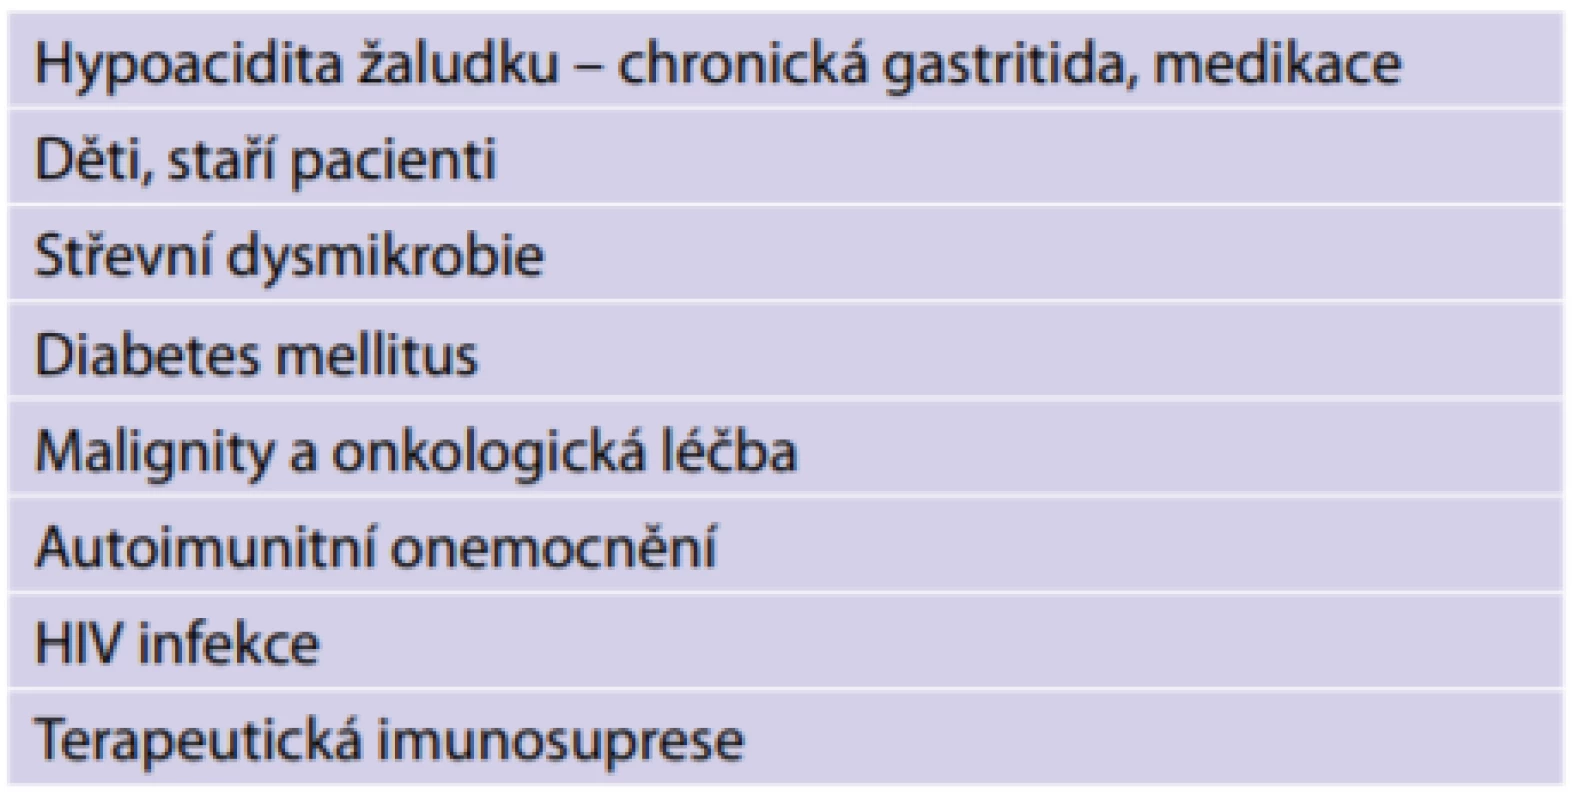 Rizikové faktory infekce Salmonella Enteritidis [4]<br>
Tab. 1: Risk factors for Salmonella Enteritidis infection [4]